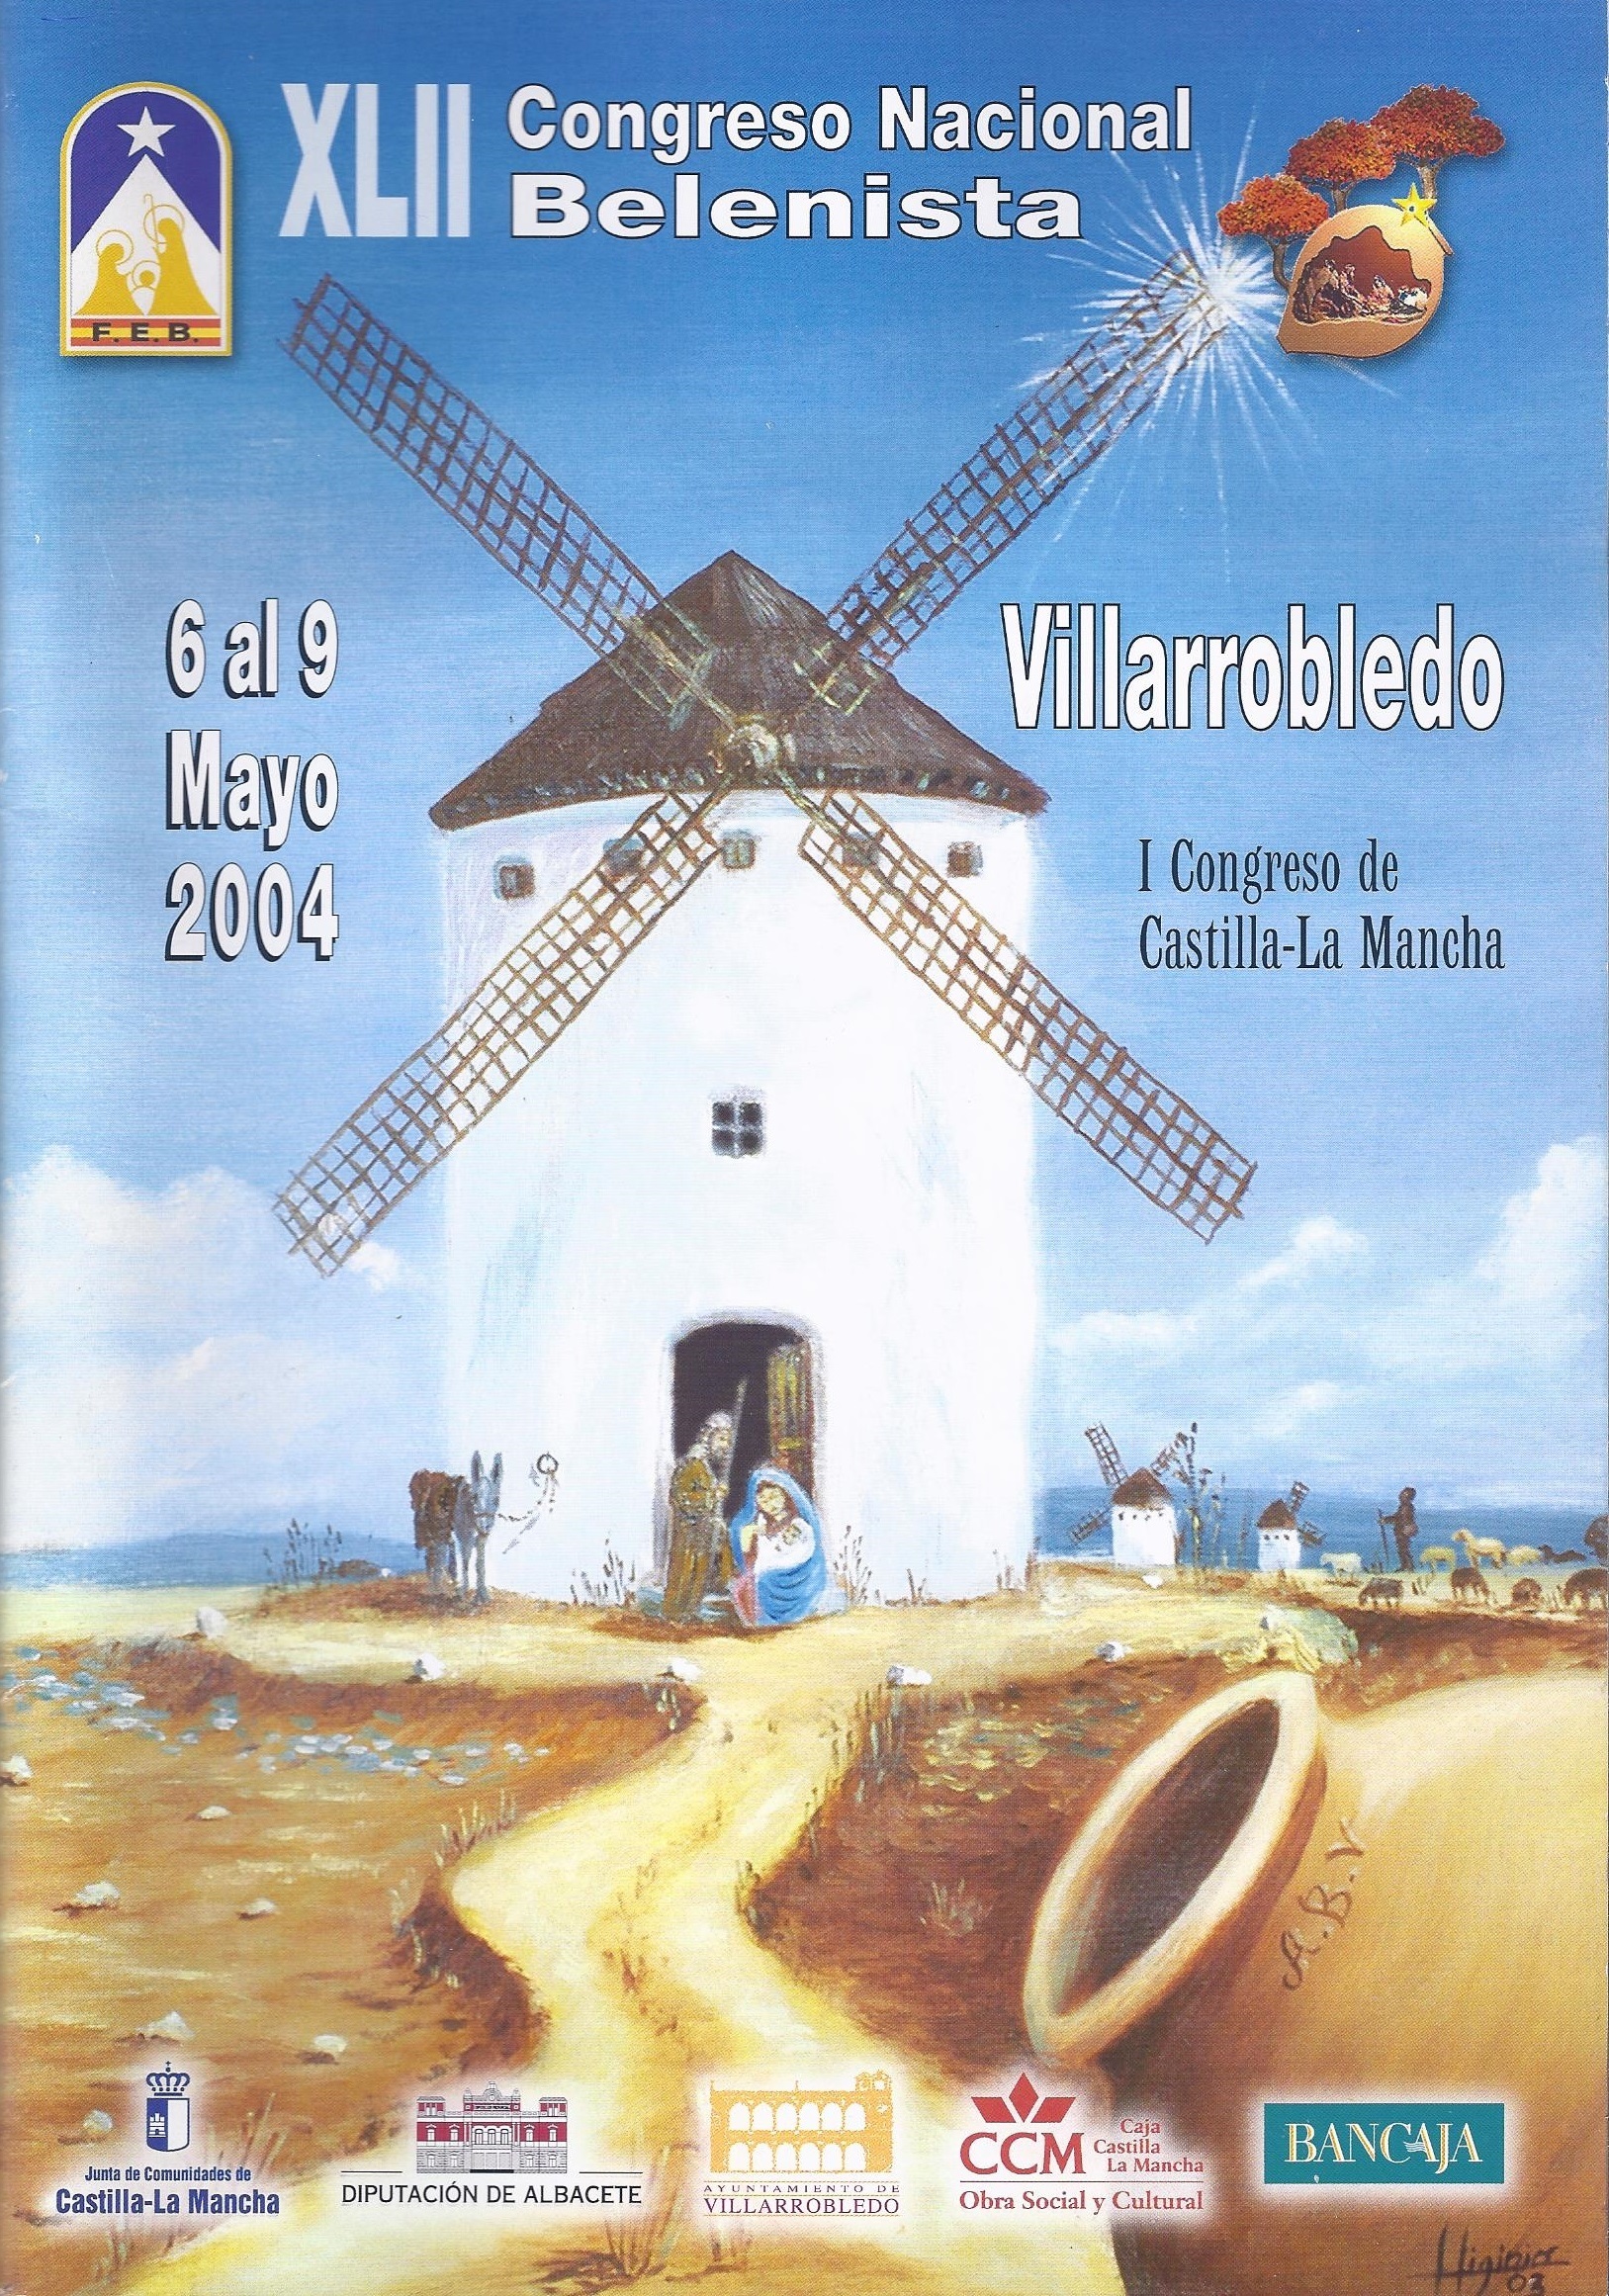 Cartel del XLII Congreso Nacional Belenista, organizado por la Asociación Belenista de Villarrobledo y celebrado ente el 6 y el 9 de mayo de 2004